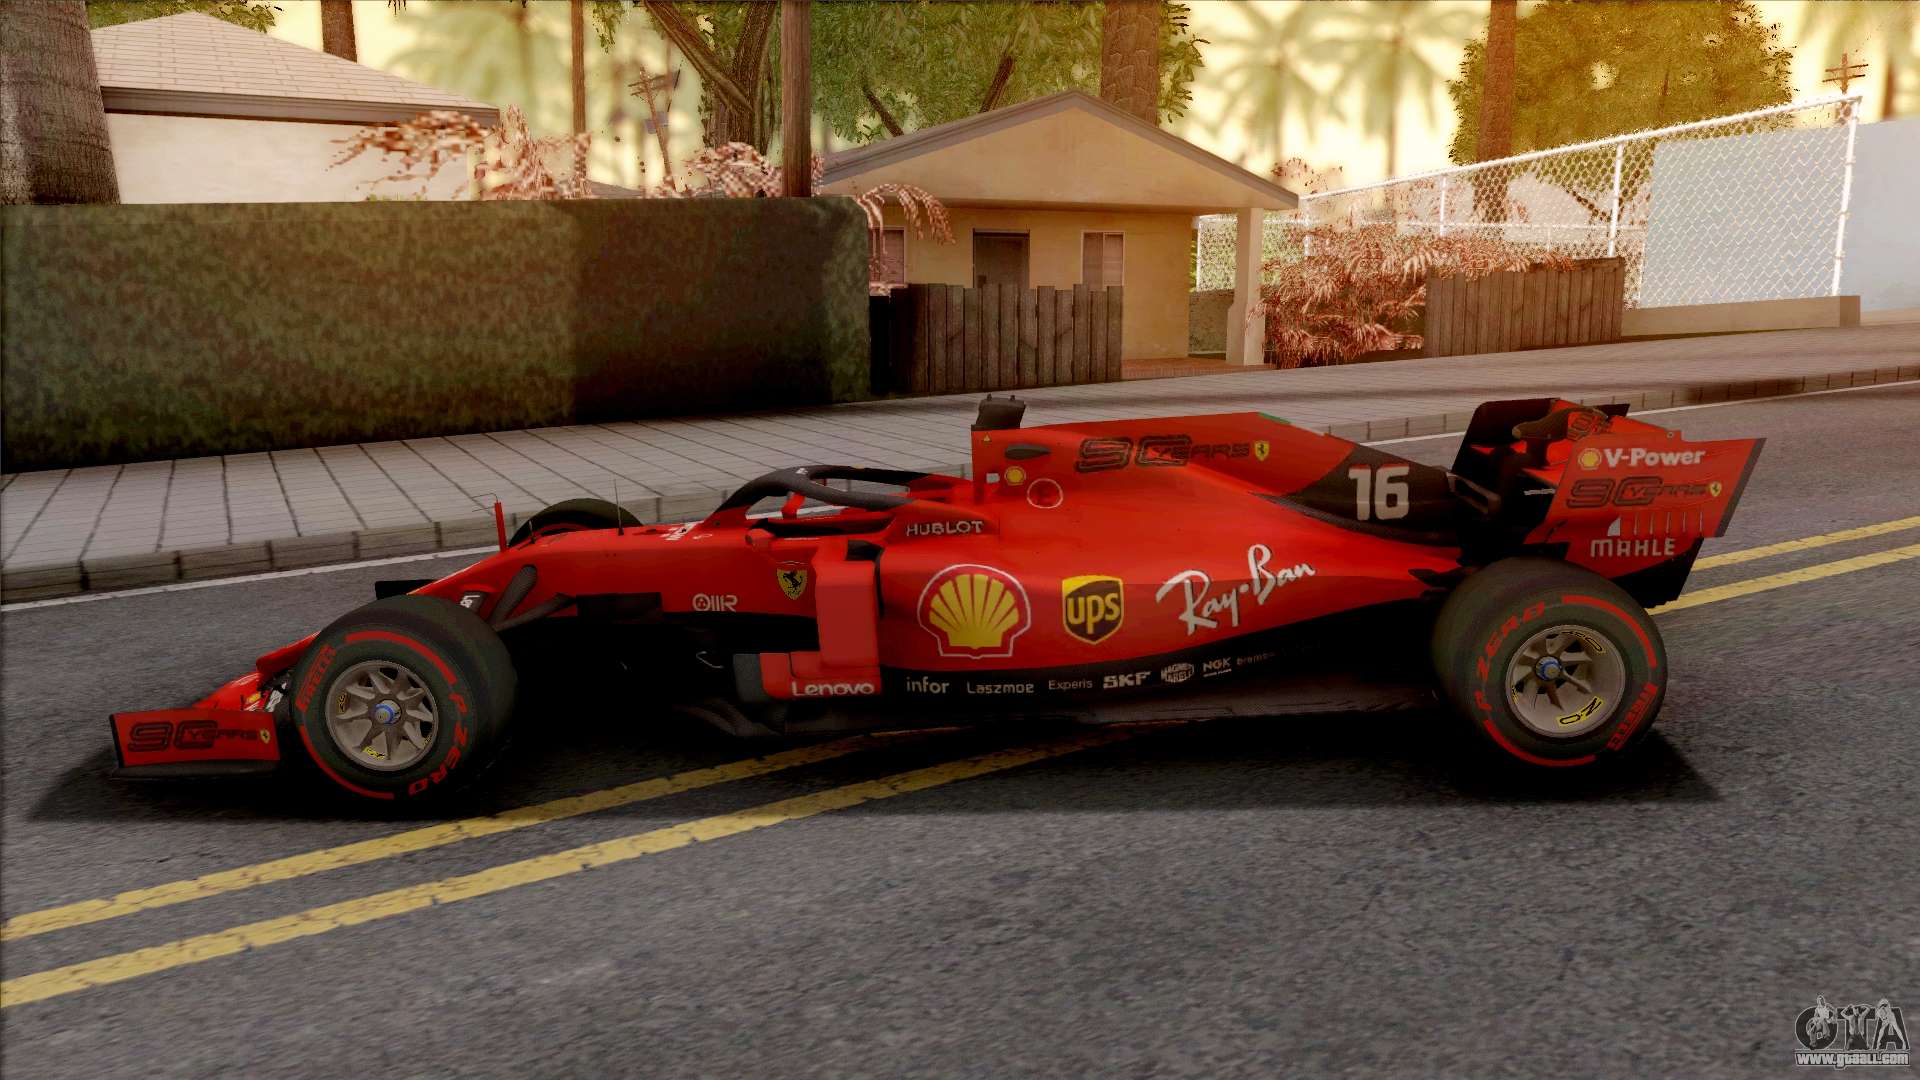 Ferrari F1 para GTA San Andreas